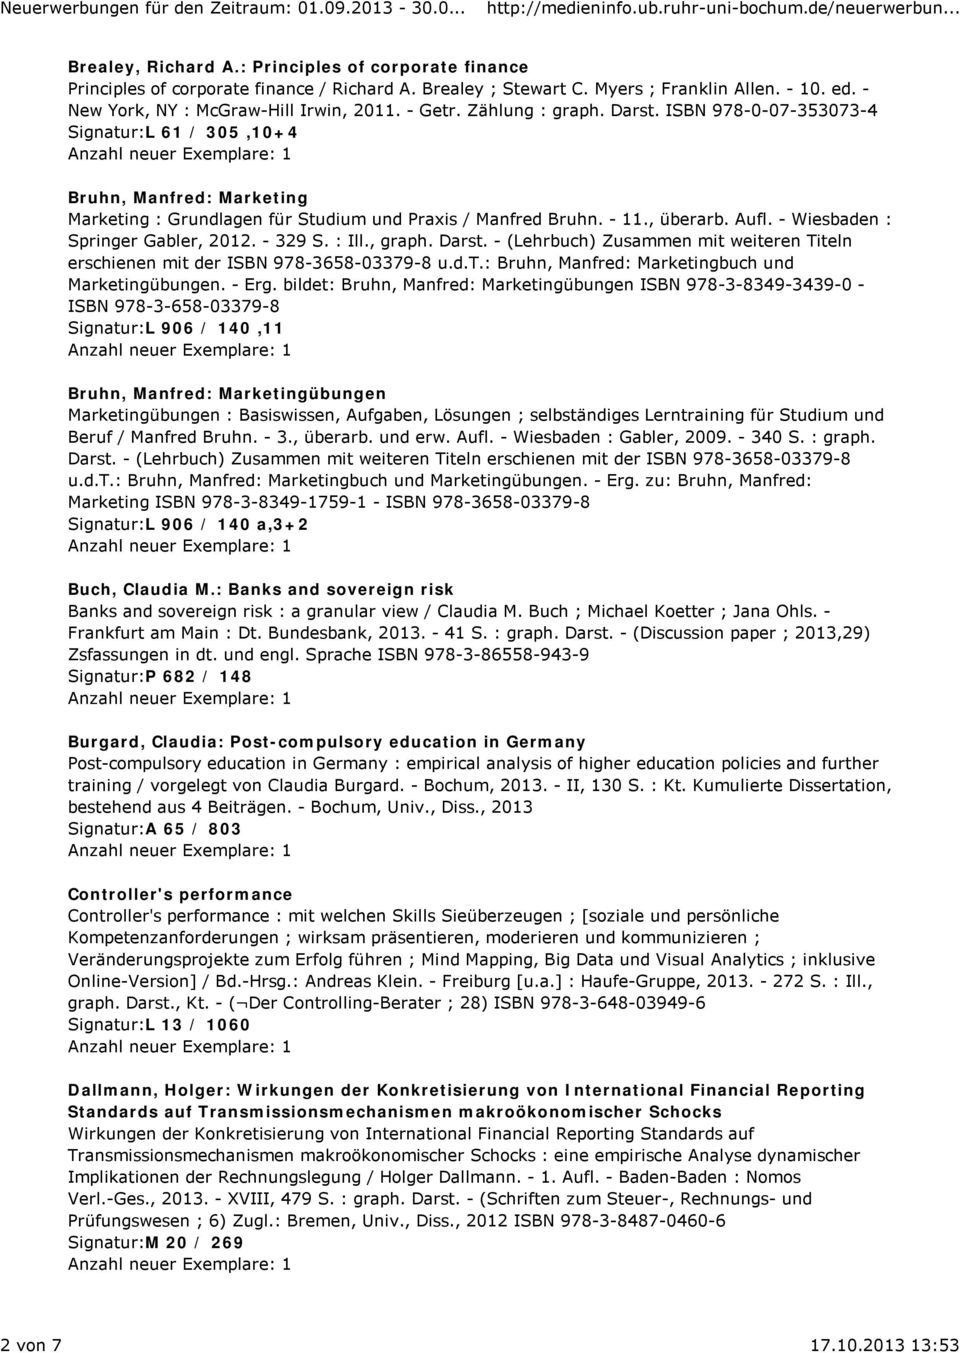 ISBN 978-0-07-353073-4 Signatur:L 61 / 305,10+4 Bruhn, Manfred: Marketing Marketing : Grundlagen für Studium und Praxis / Manfred Bruhn. - 11., überarb. Aufl. - Wiesbaden : Springer Gabler, 2012.